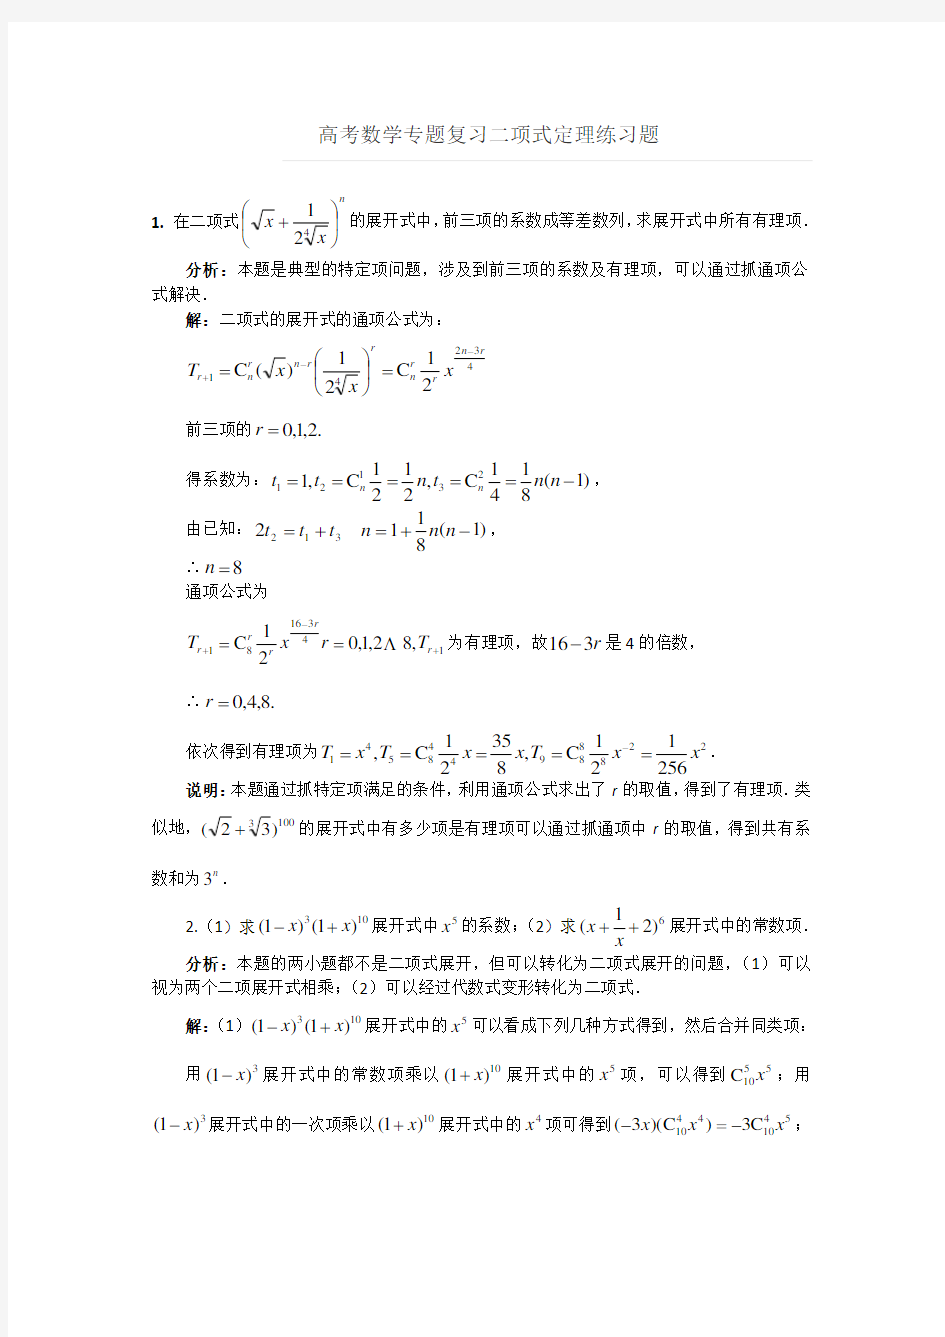 二项式定理典型例题62081